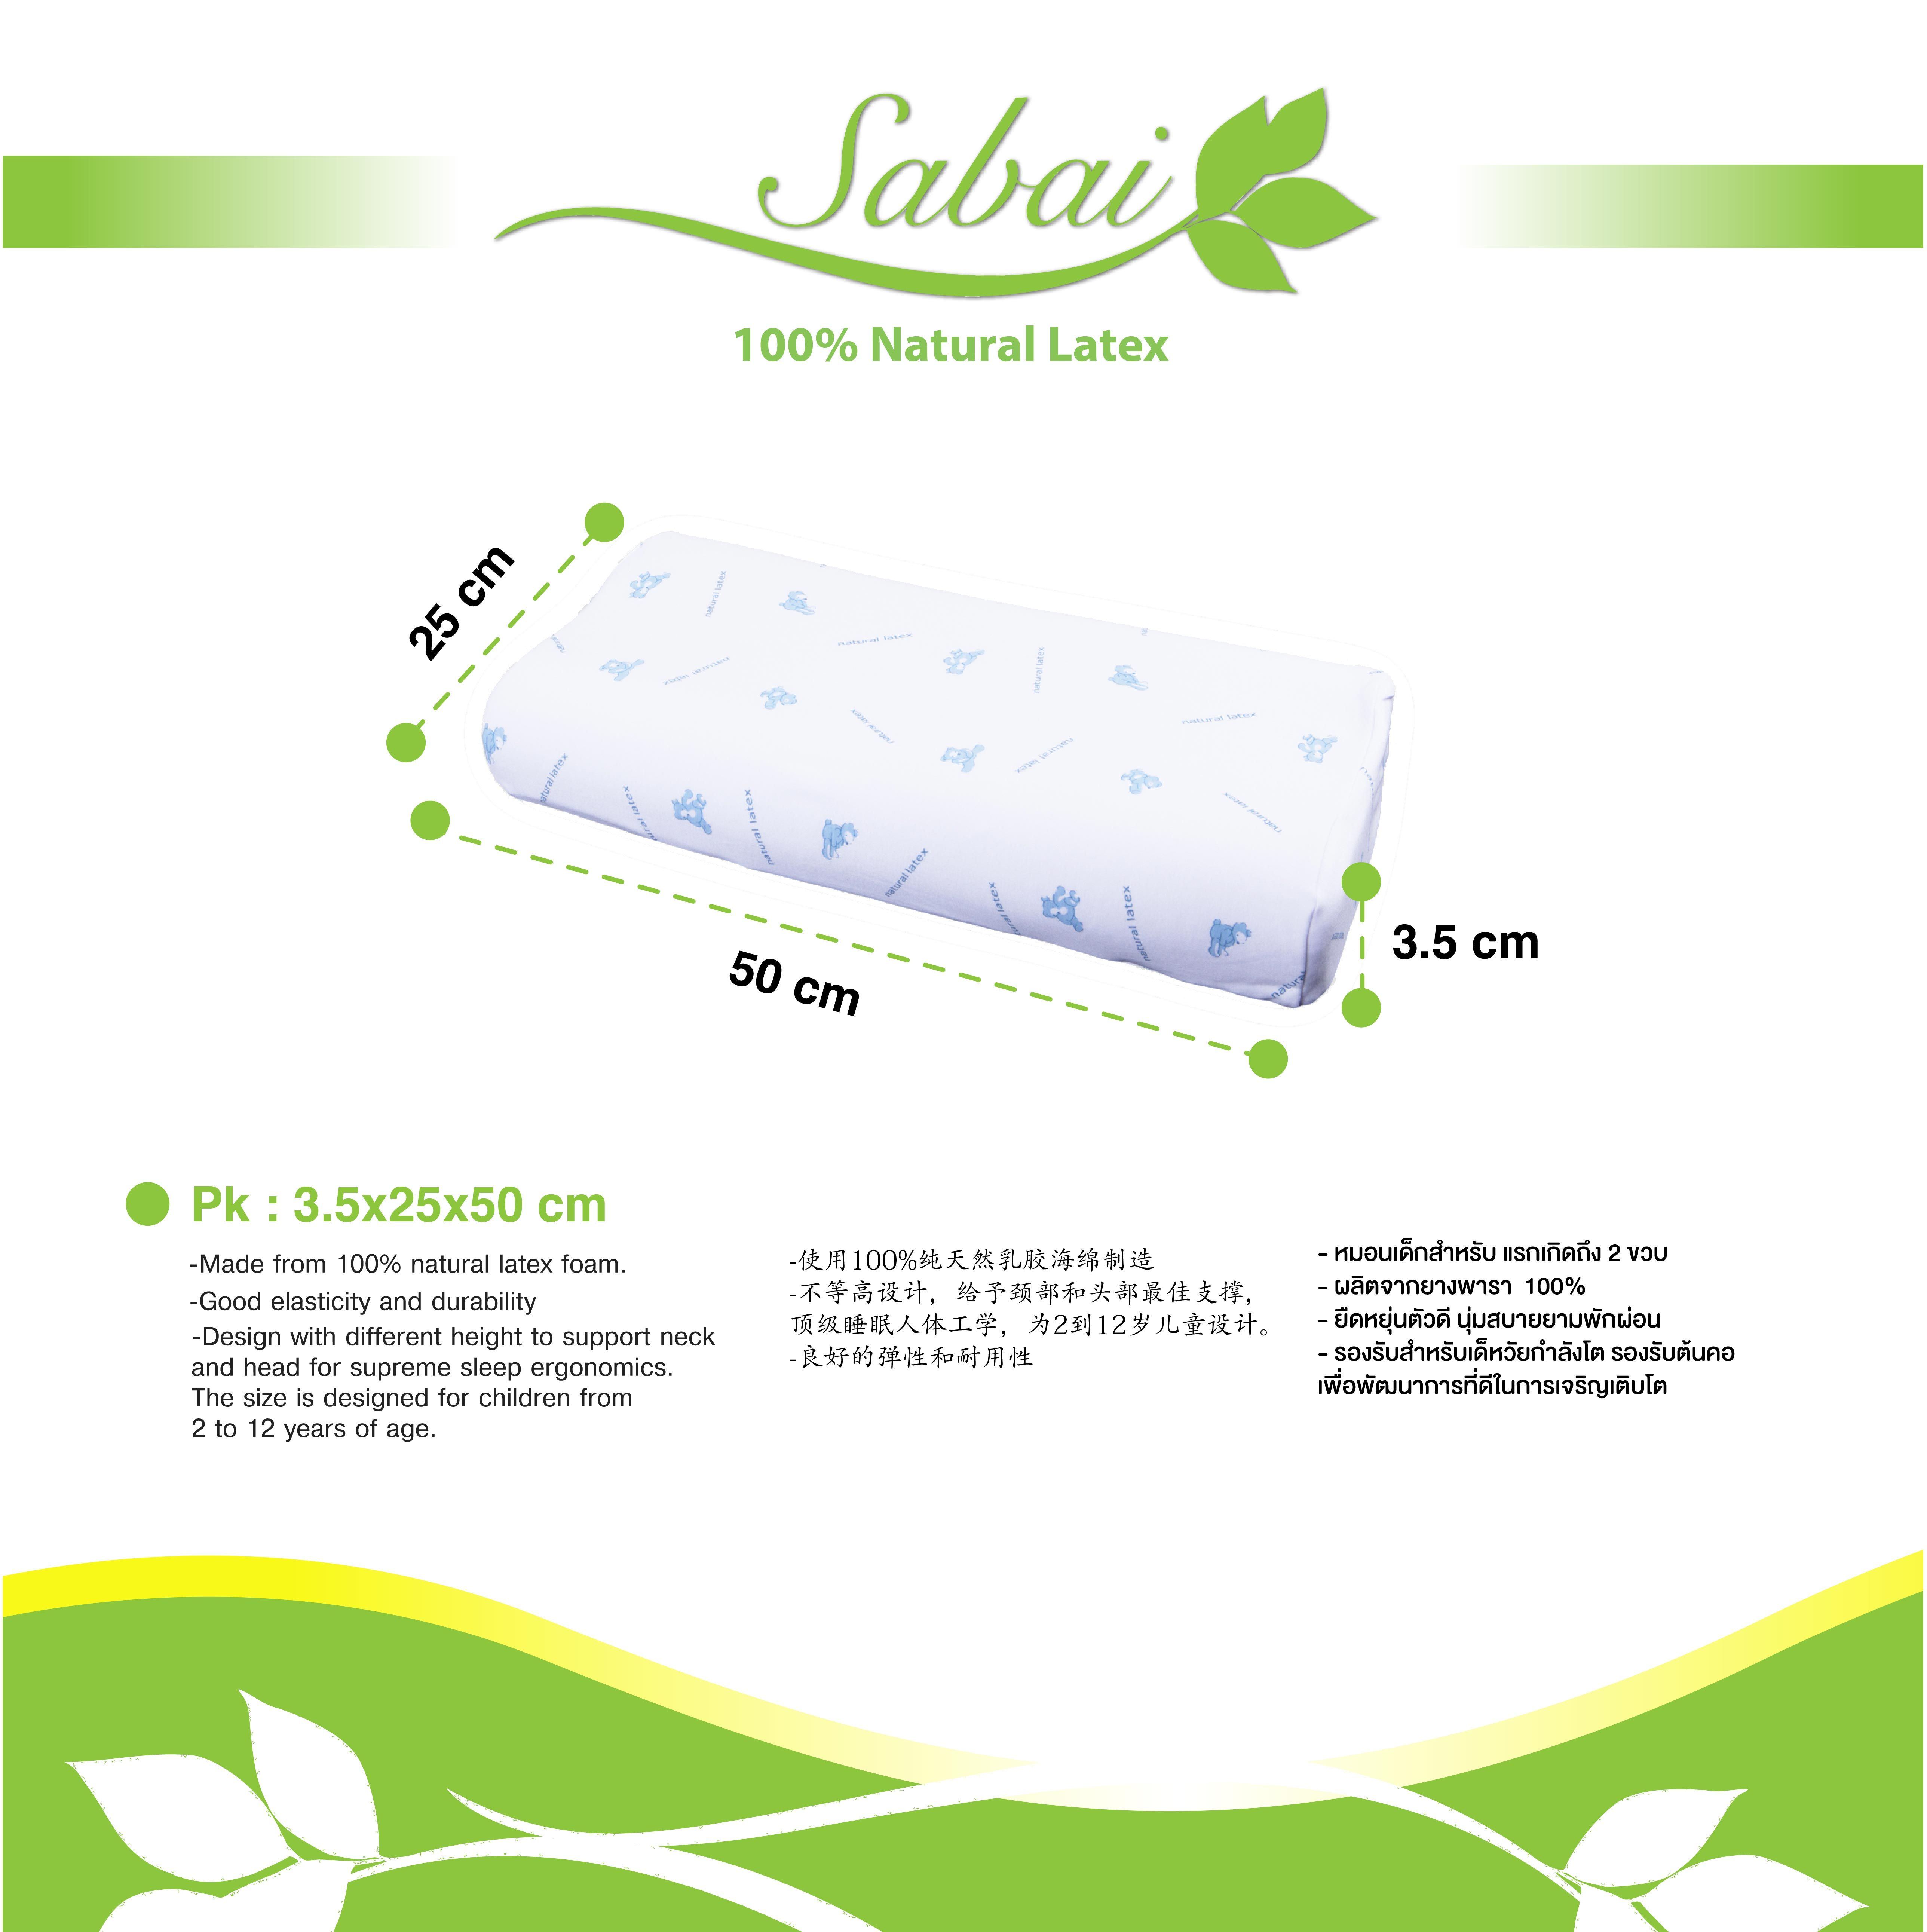 分辨西安乳胶床垫原料及产地有多难?